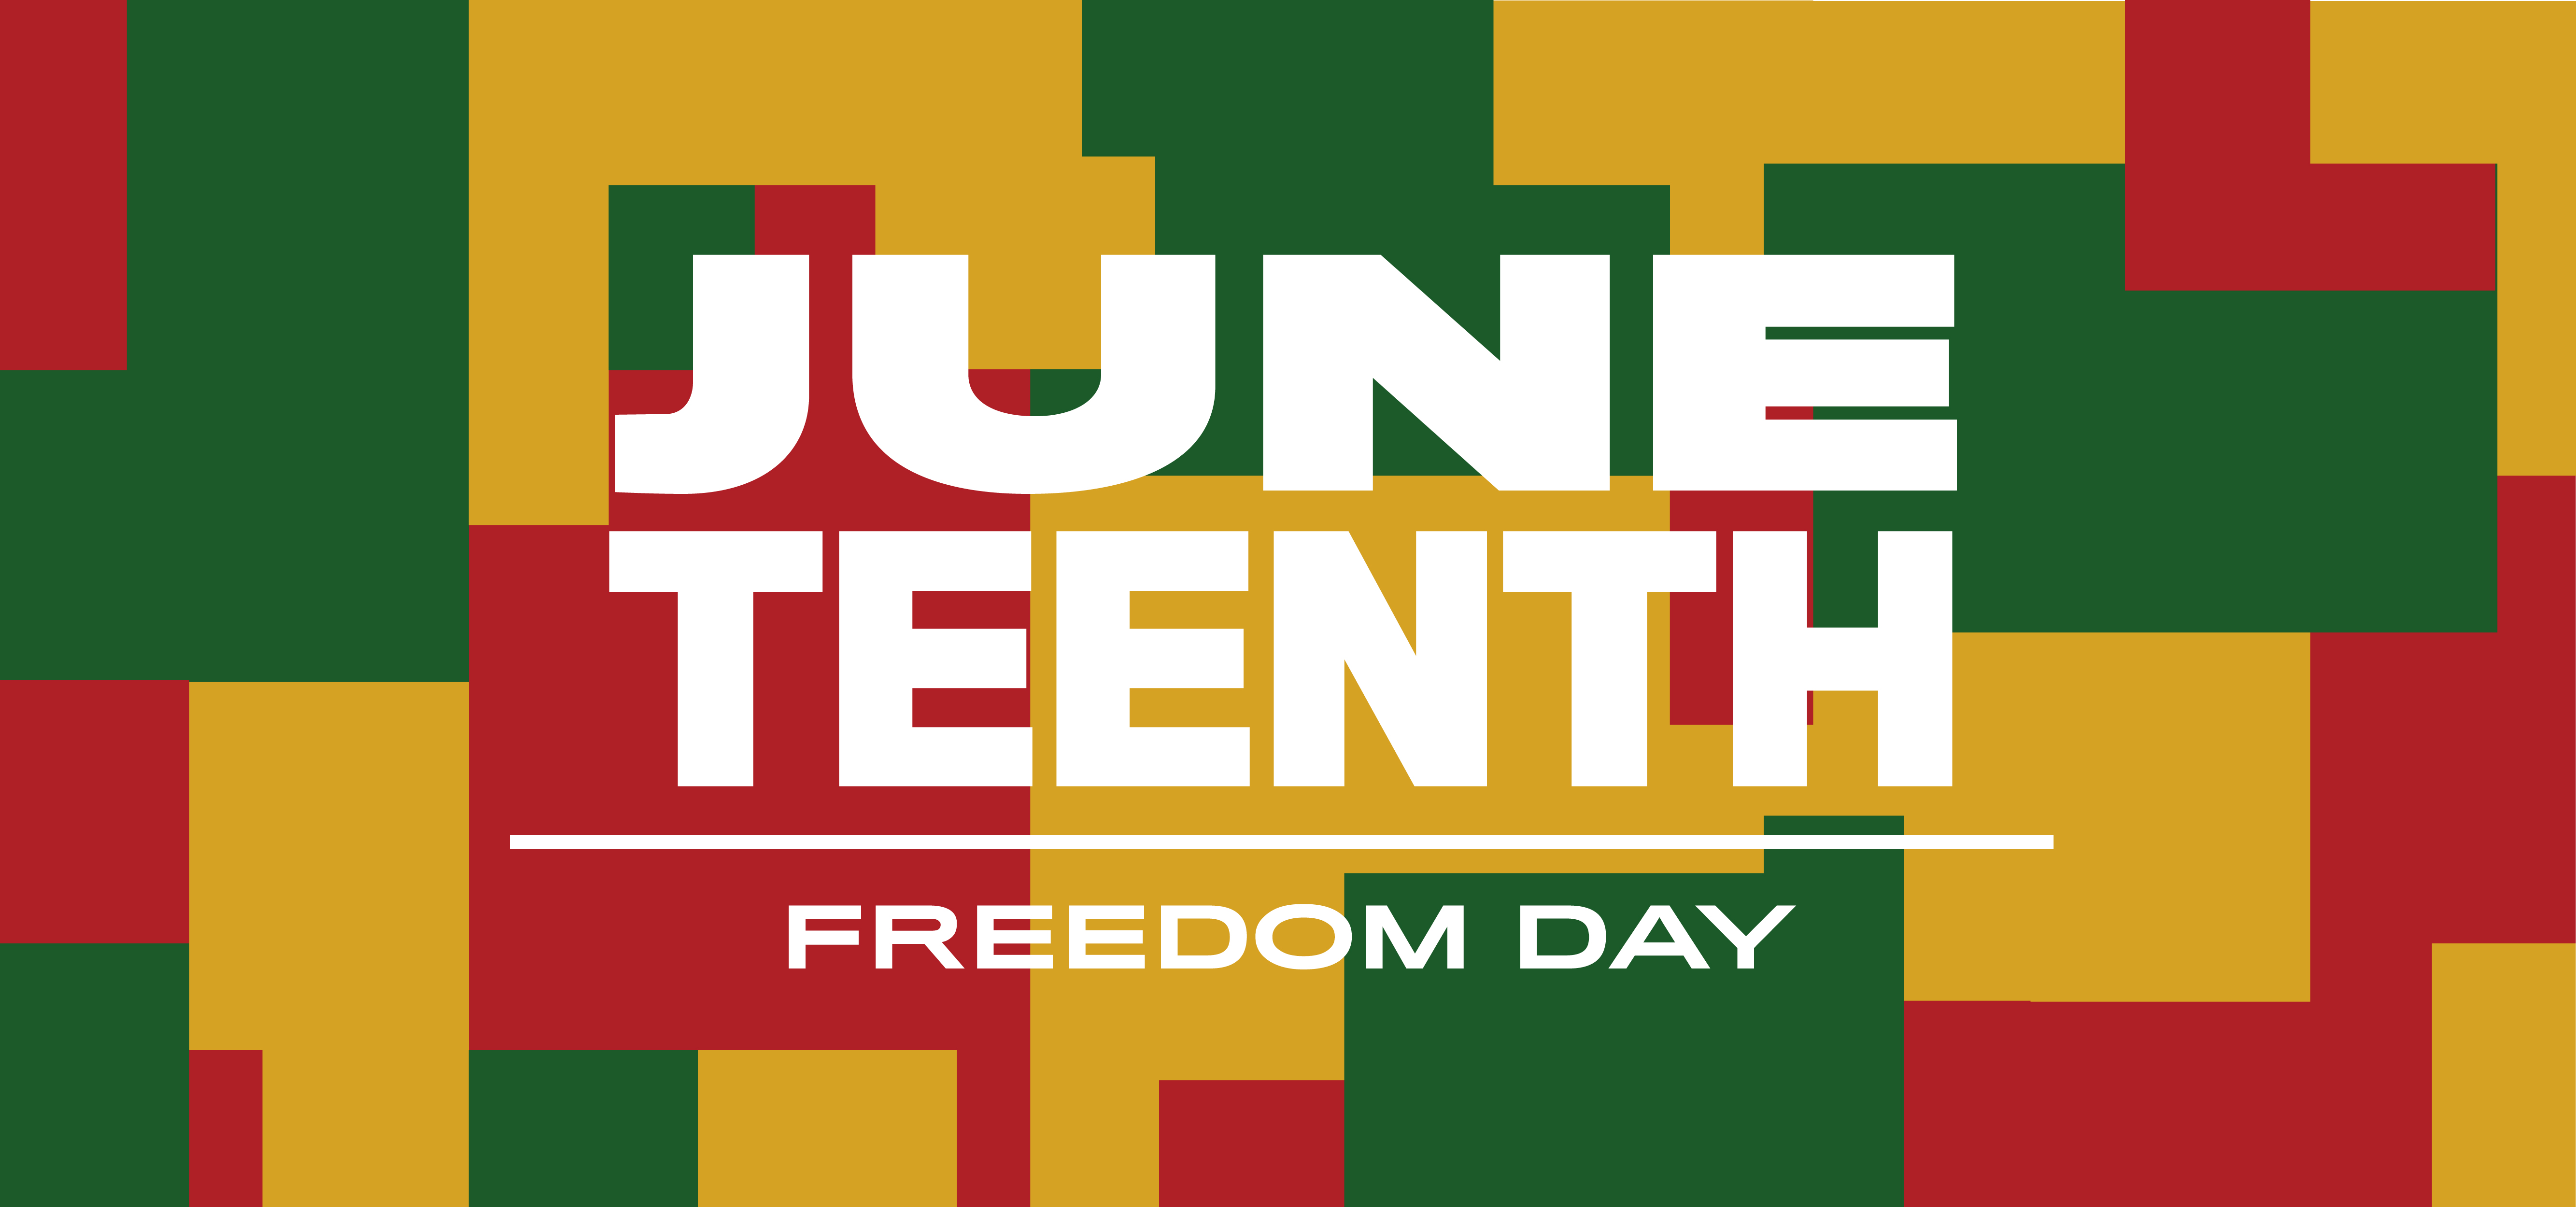 标题为六月和自由日的横幅图像，背景为红色、绿色和黄色的抽象形状。